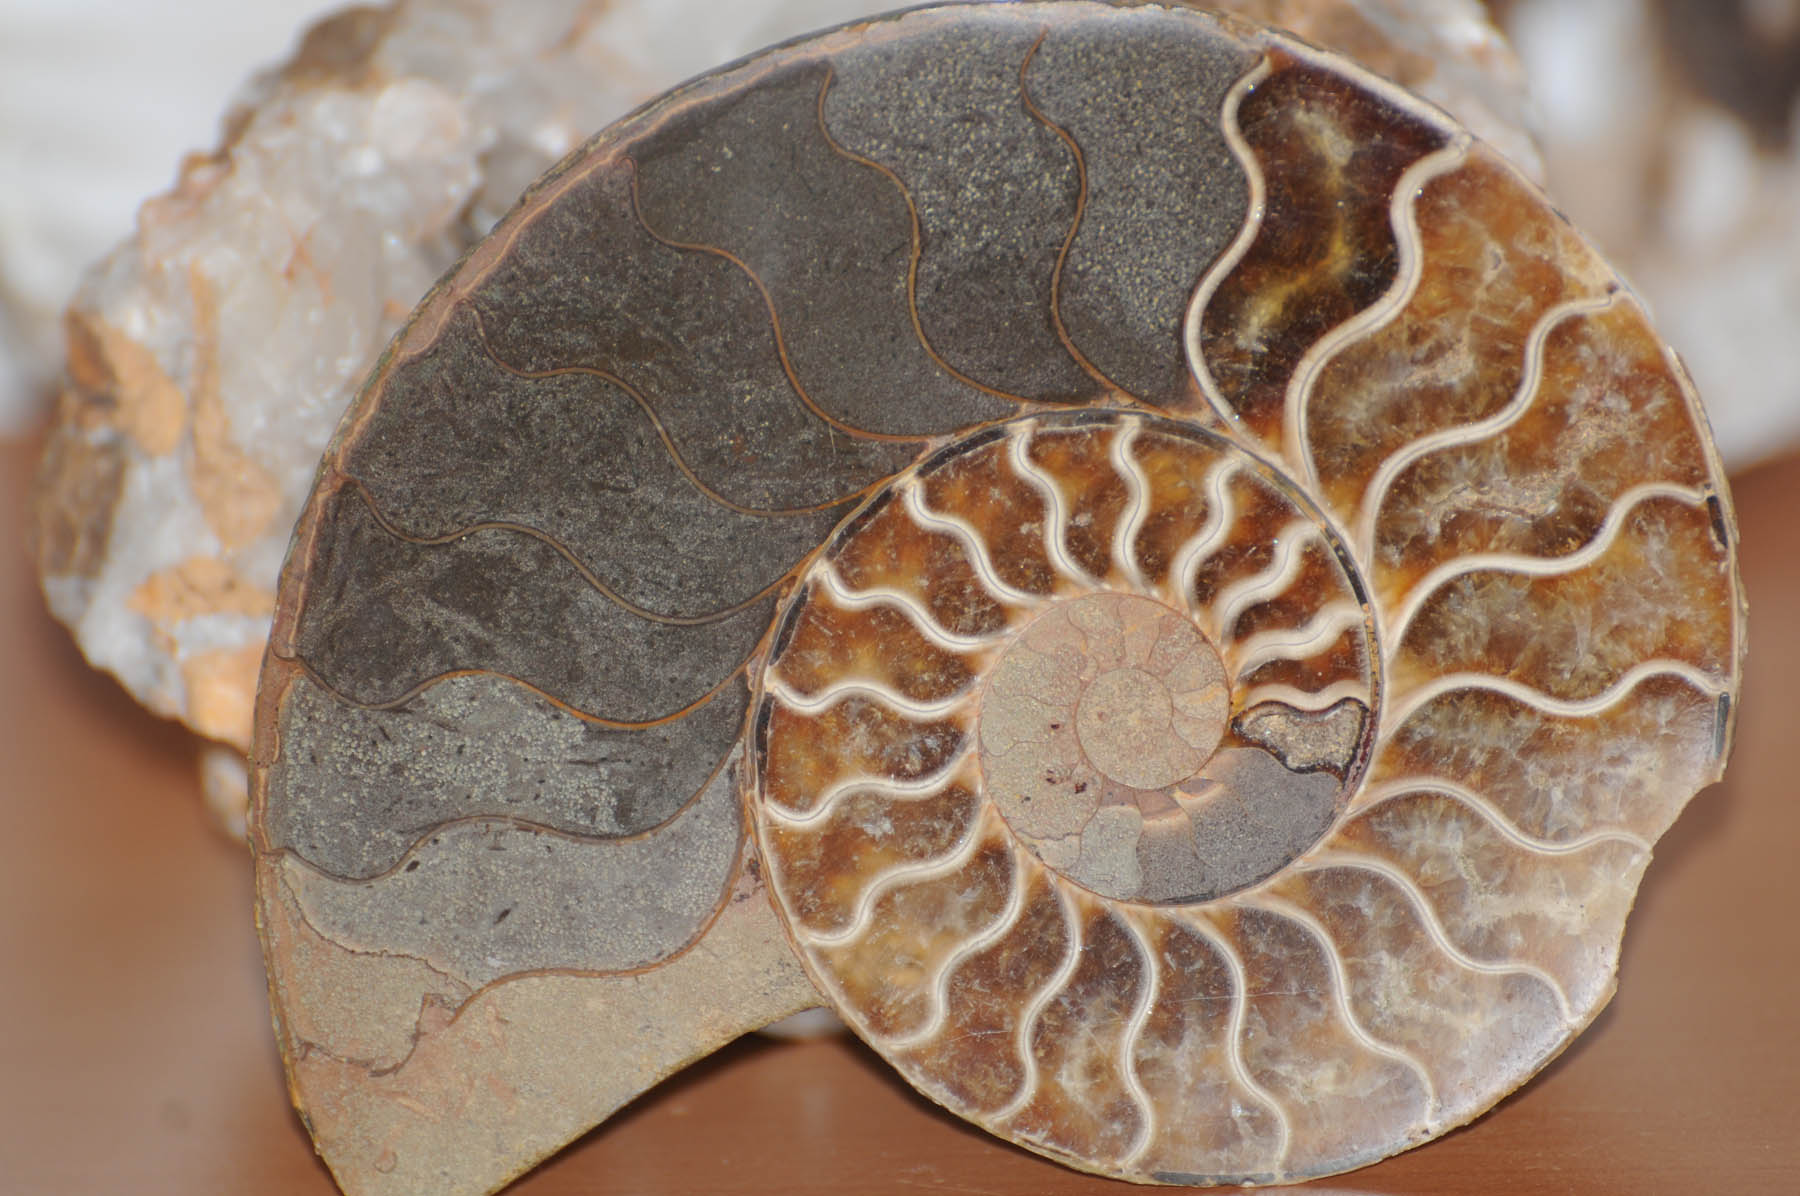 Nome: Ammonite / Luogo: Madagascar